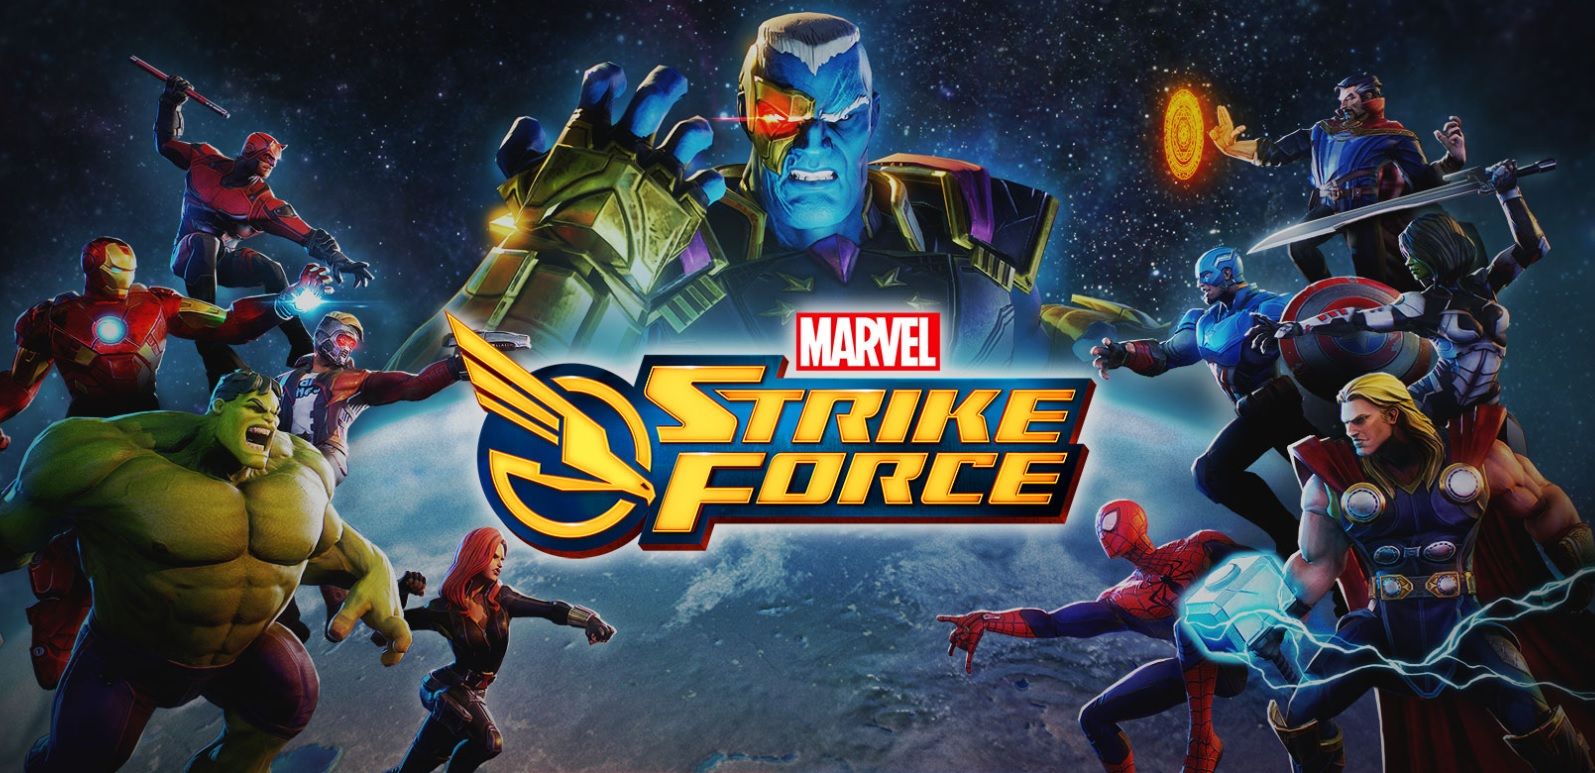 Marvel Strike Force เกมรวมทีมซูเปอร์ฮีโร่สไตล์ RPG กราฟฟิคสุดงาม พร้อมลงทั้ง Android และ iOS